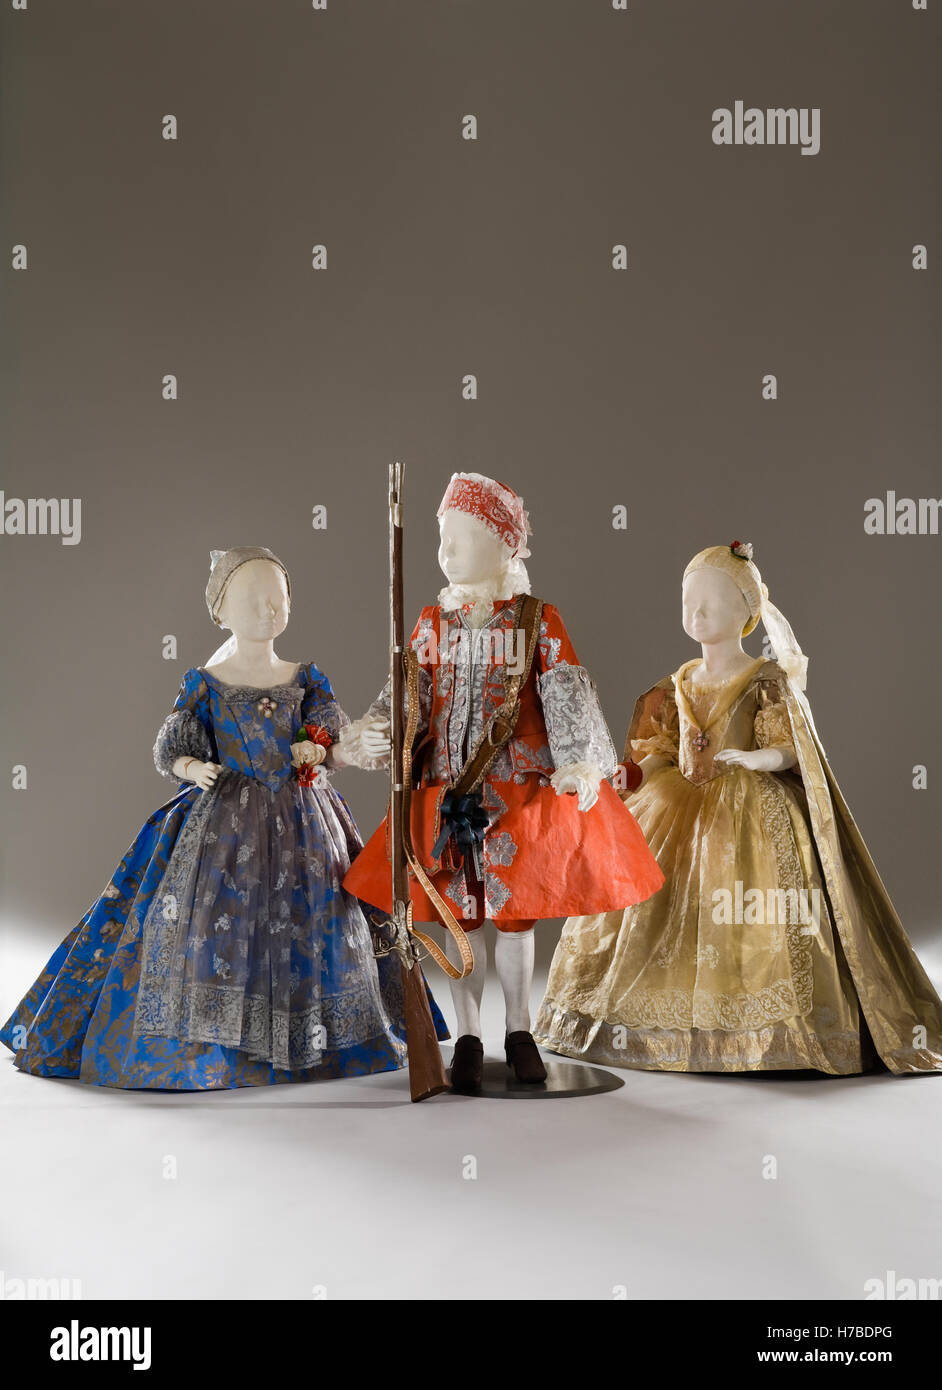 Tre manichini bambino in abito di carta costumi replica storico vestito di carta di Isabelle de Borchgrave Foto Stock